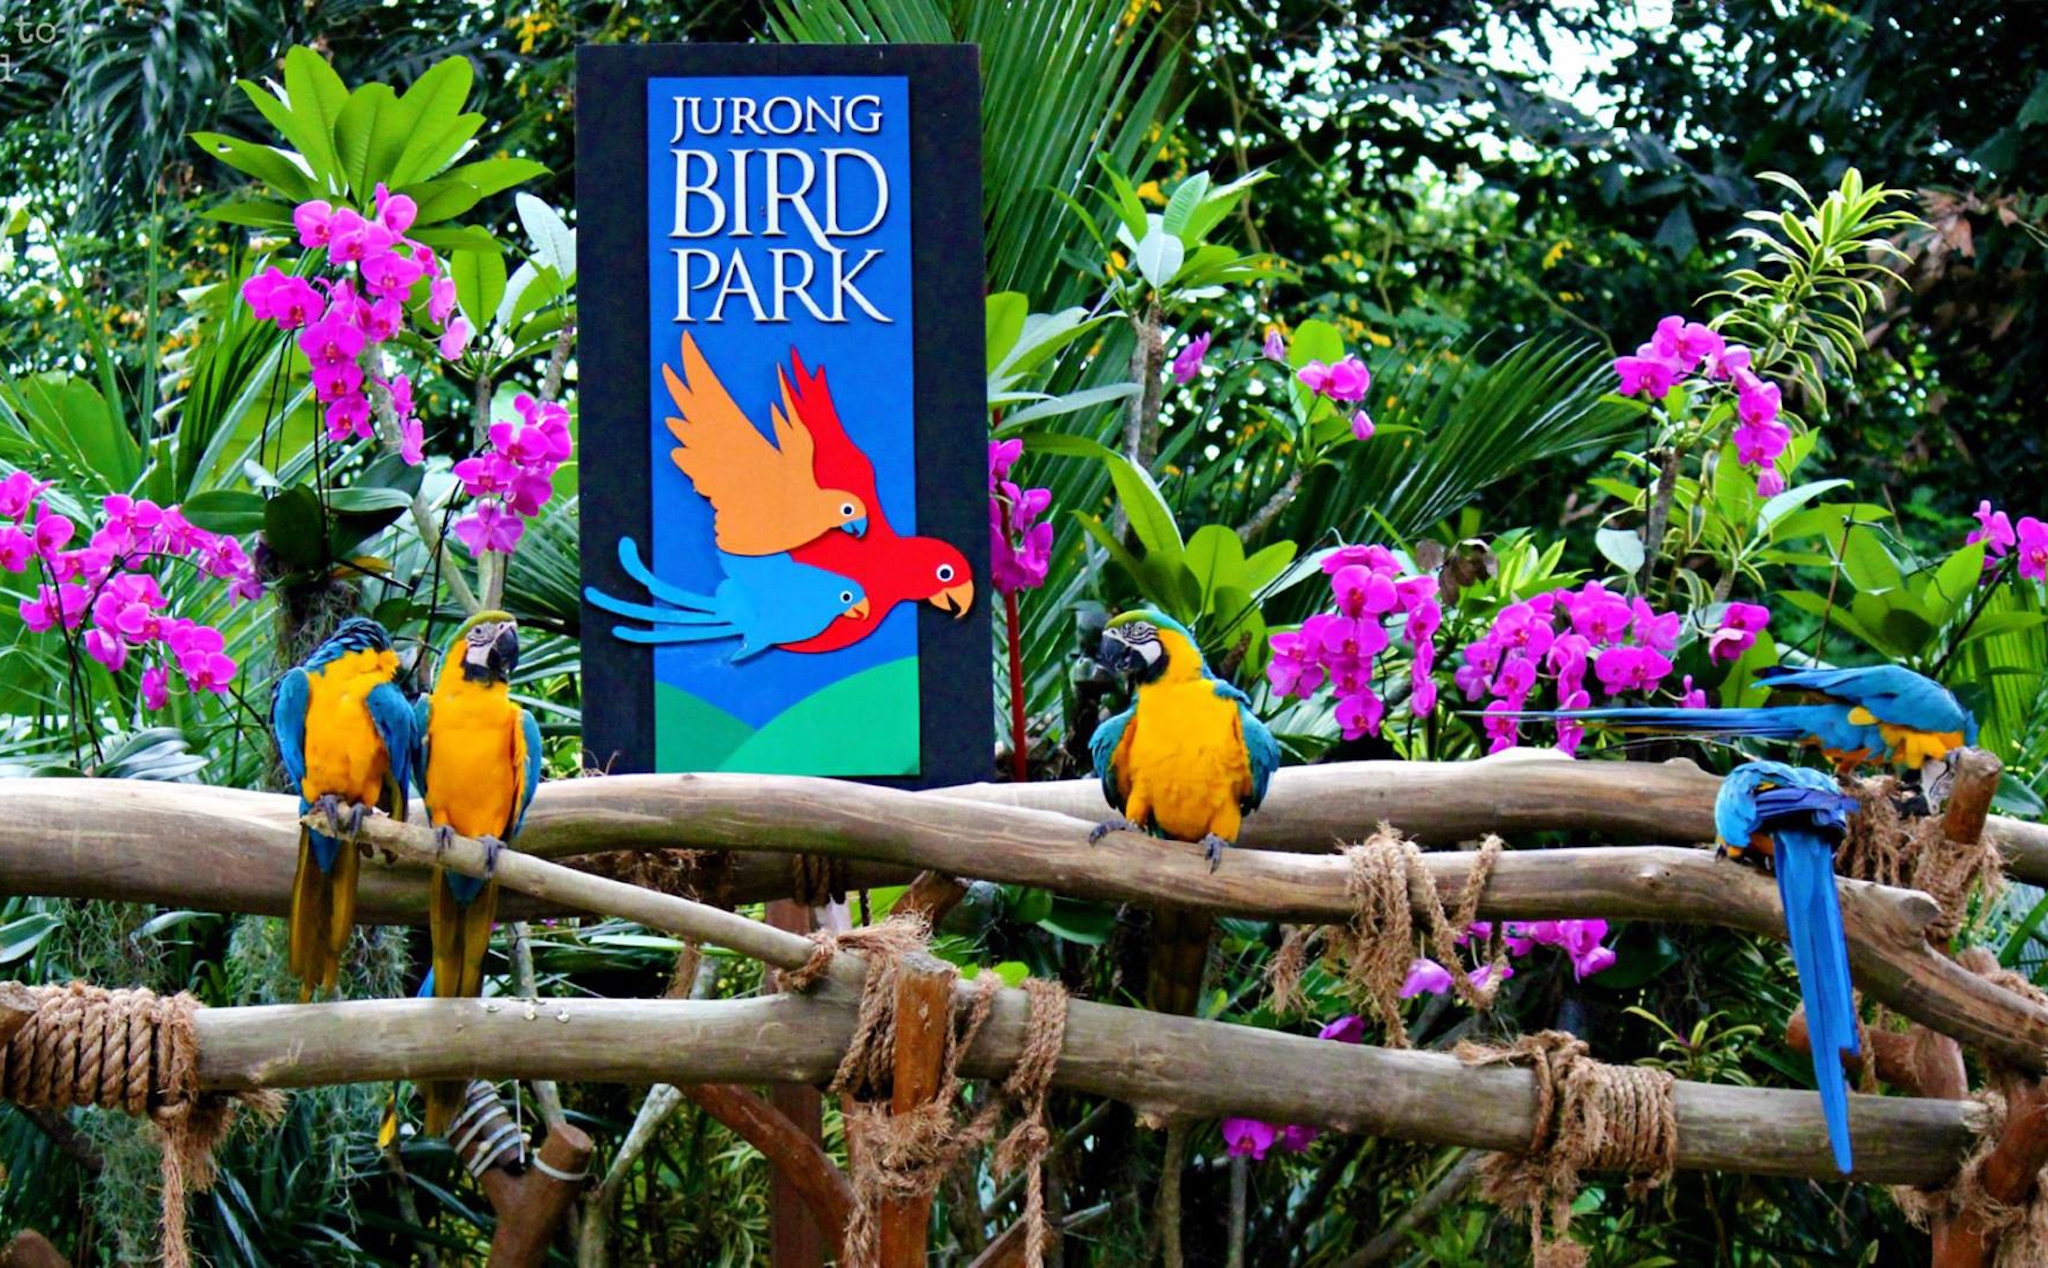 Vườn chim Jurong lớn nhất châu Á ở Singapore sẽ đóng cửa